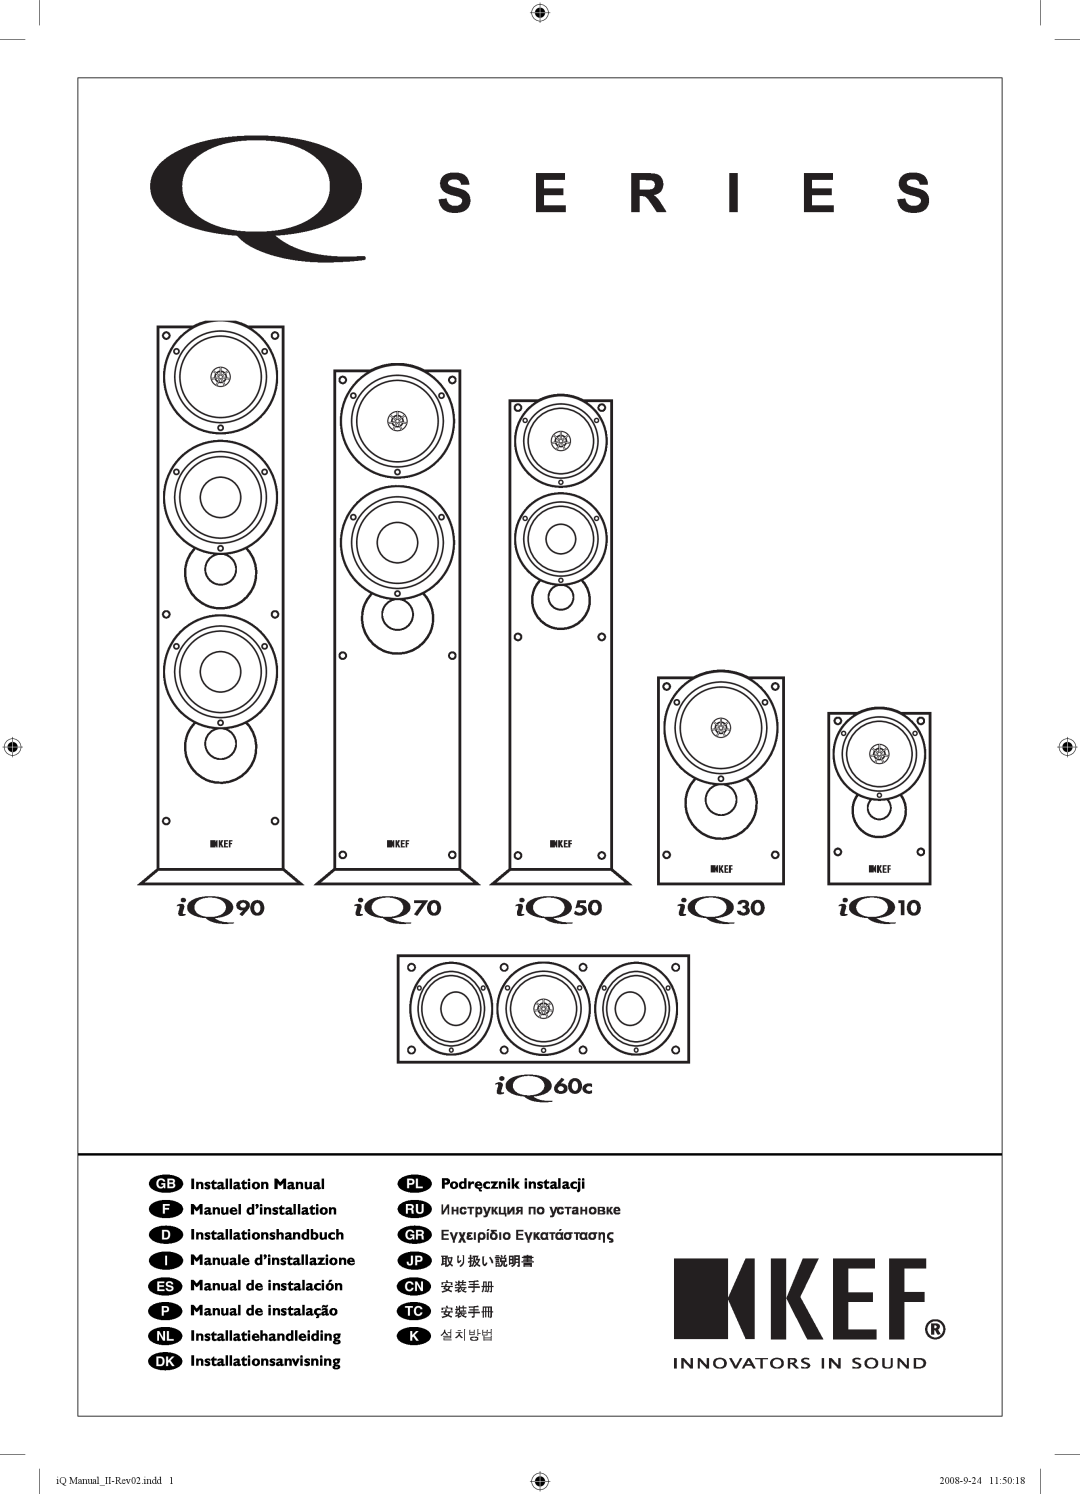 KEF Audio IQ50 specifications Installation Manual, Podręcznik instalacji, Manuel d’installation, Installationshandbuch 